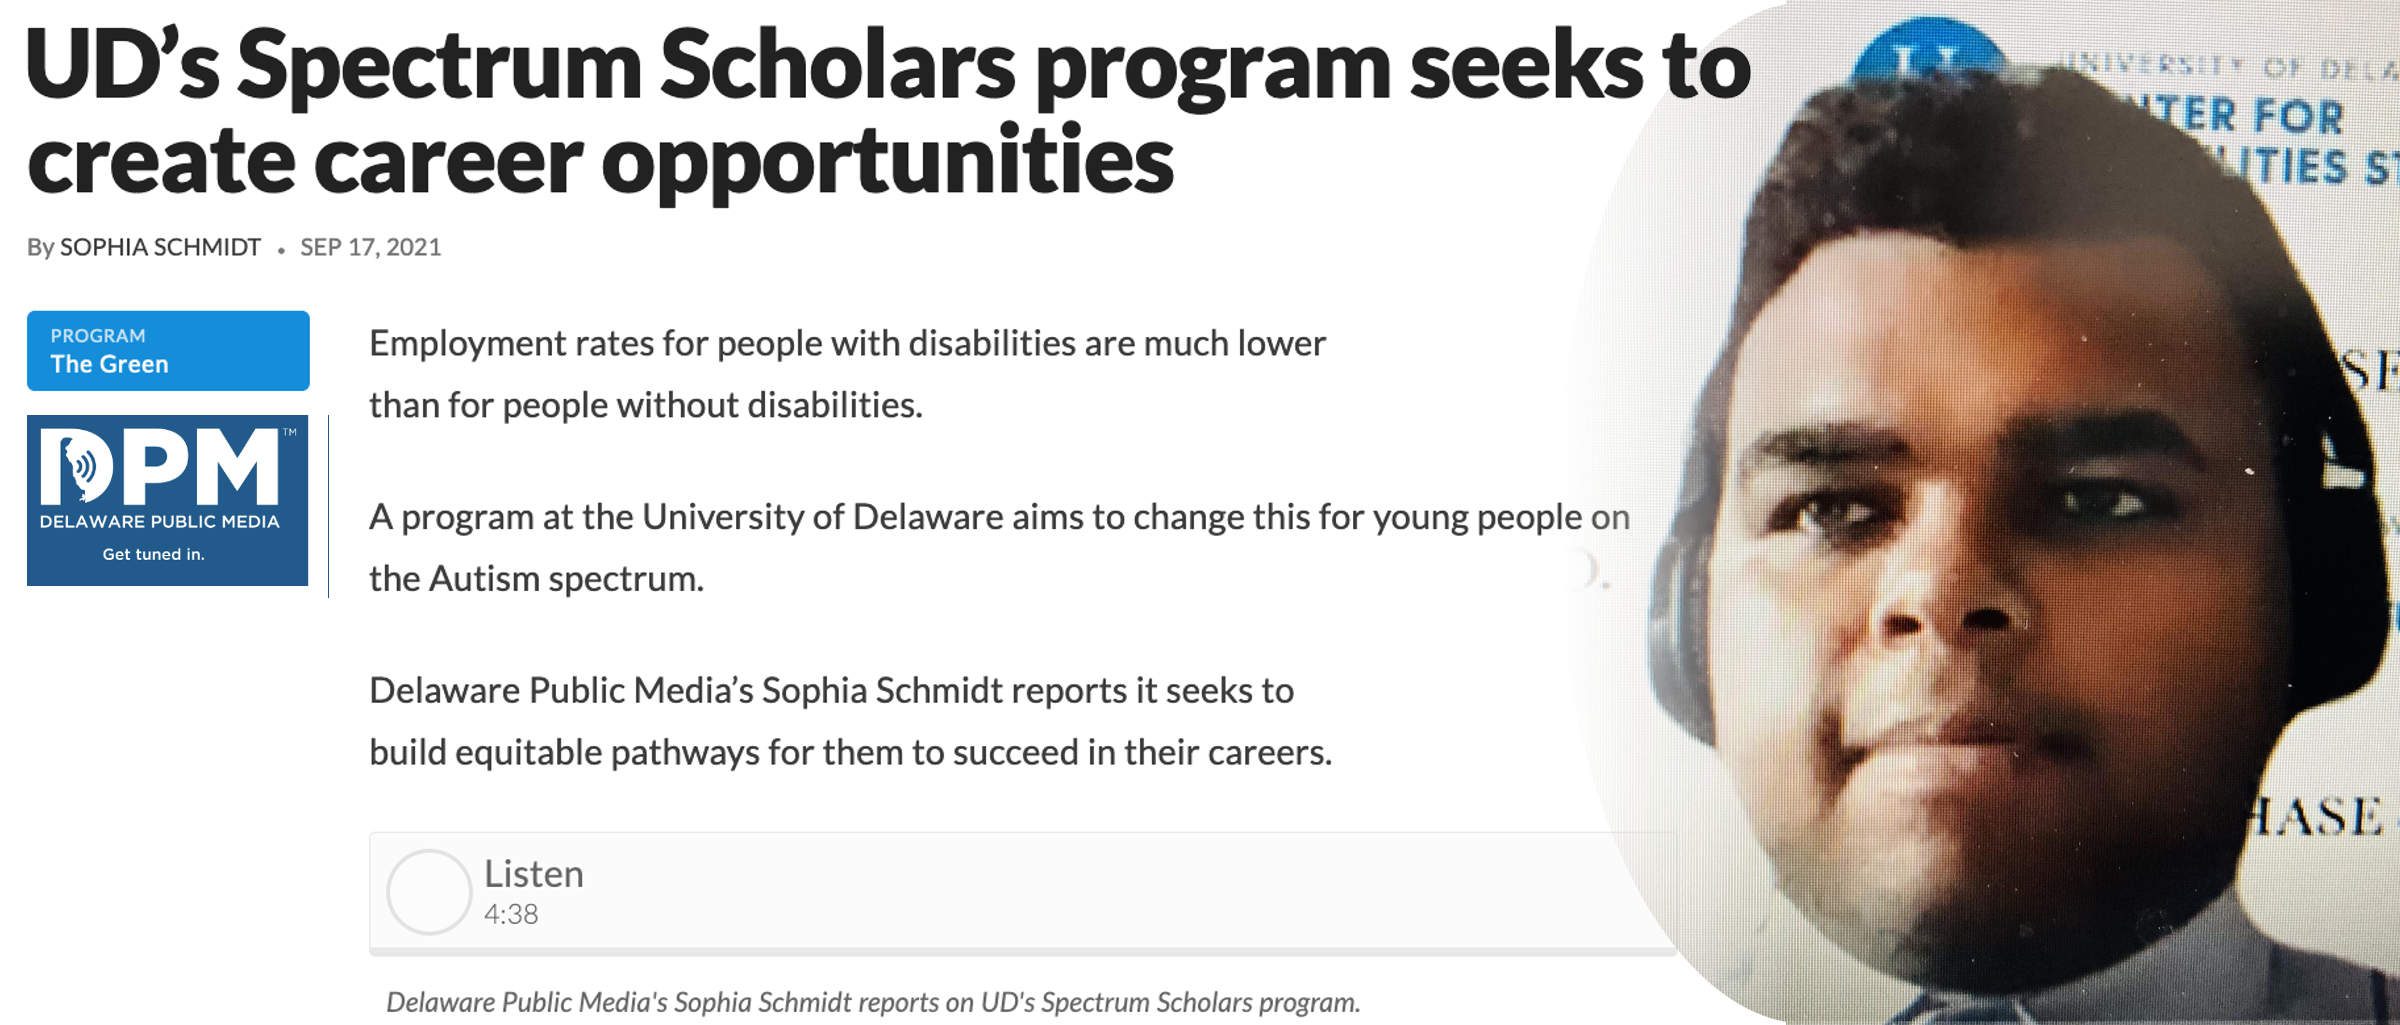 UD’s Spectrum Scholars program seeks to create career opportunities